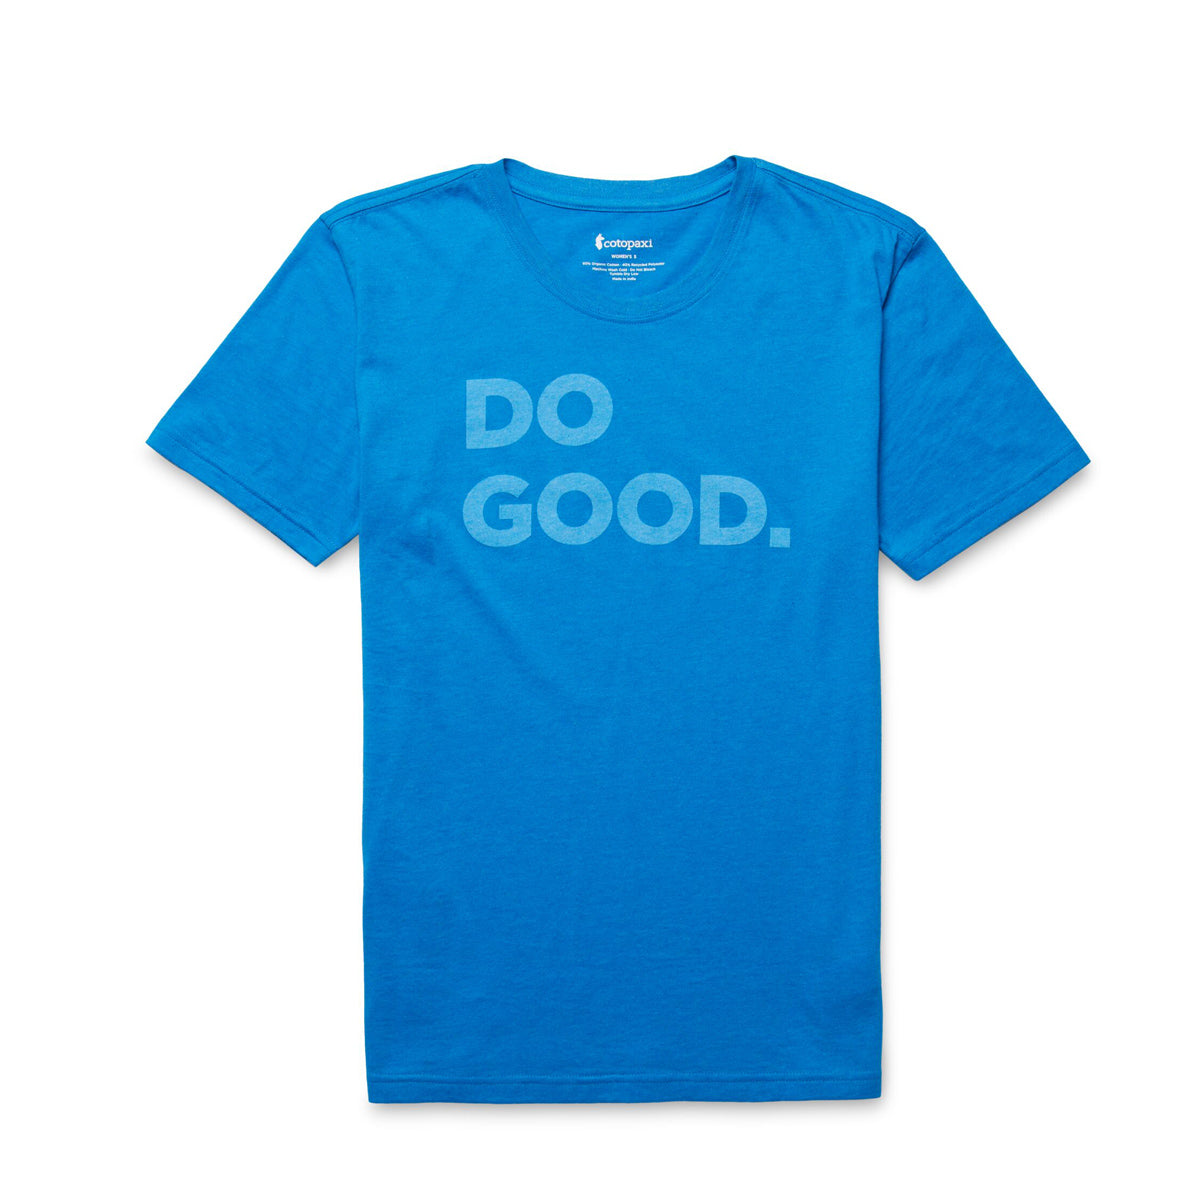 Do Good T-Shirt - WOMENS